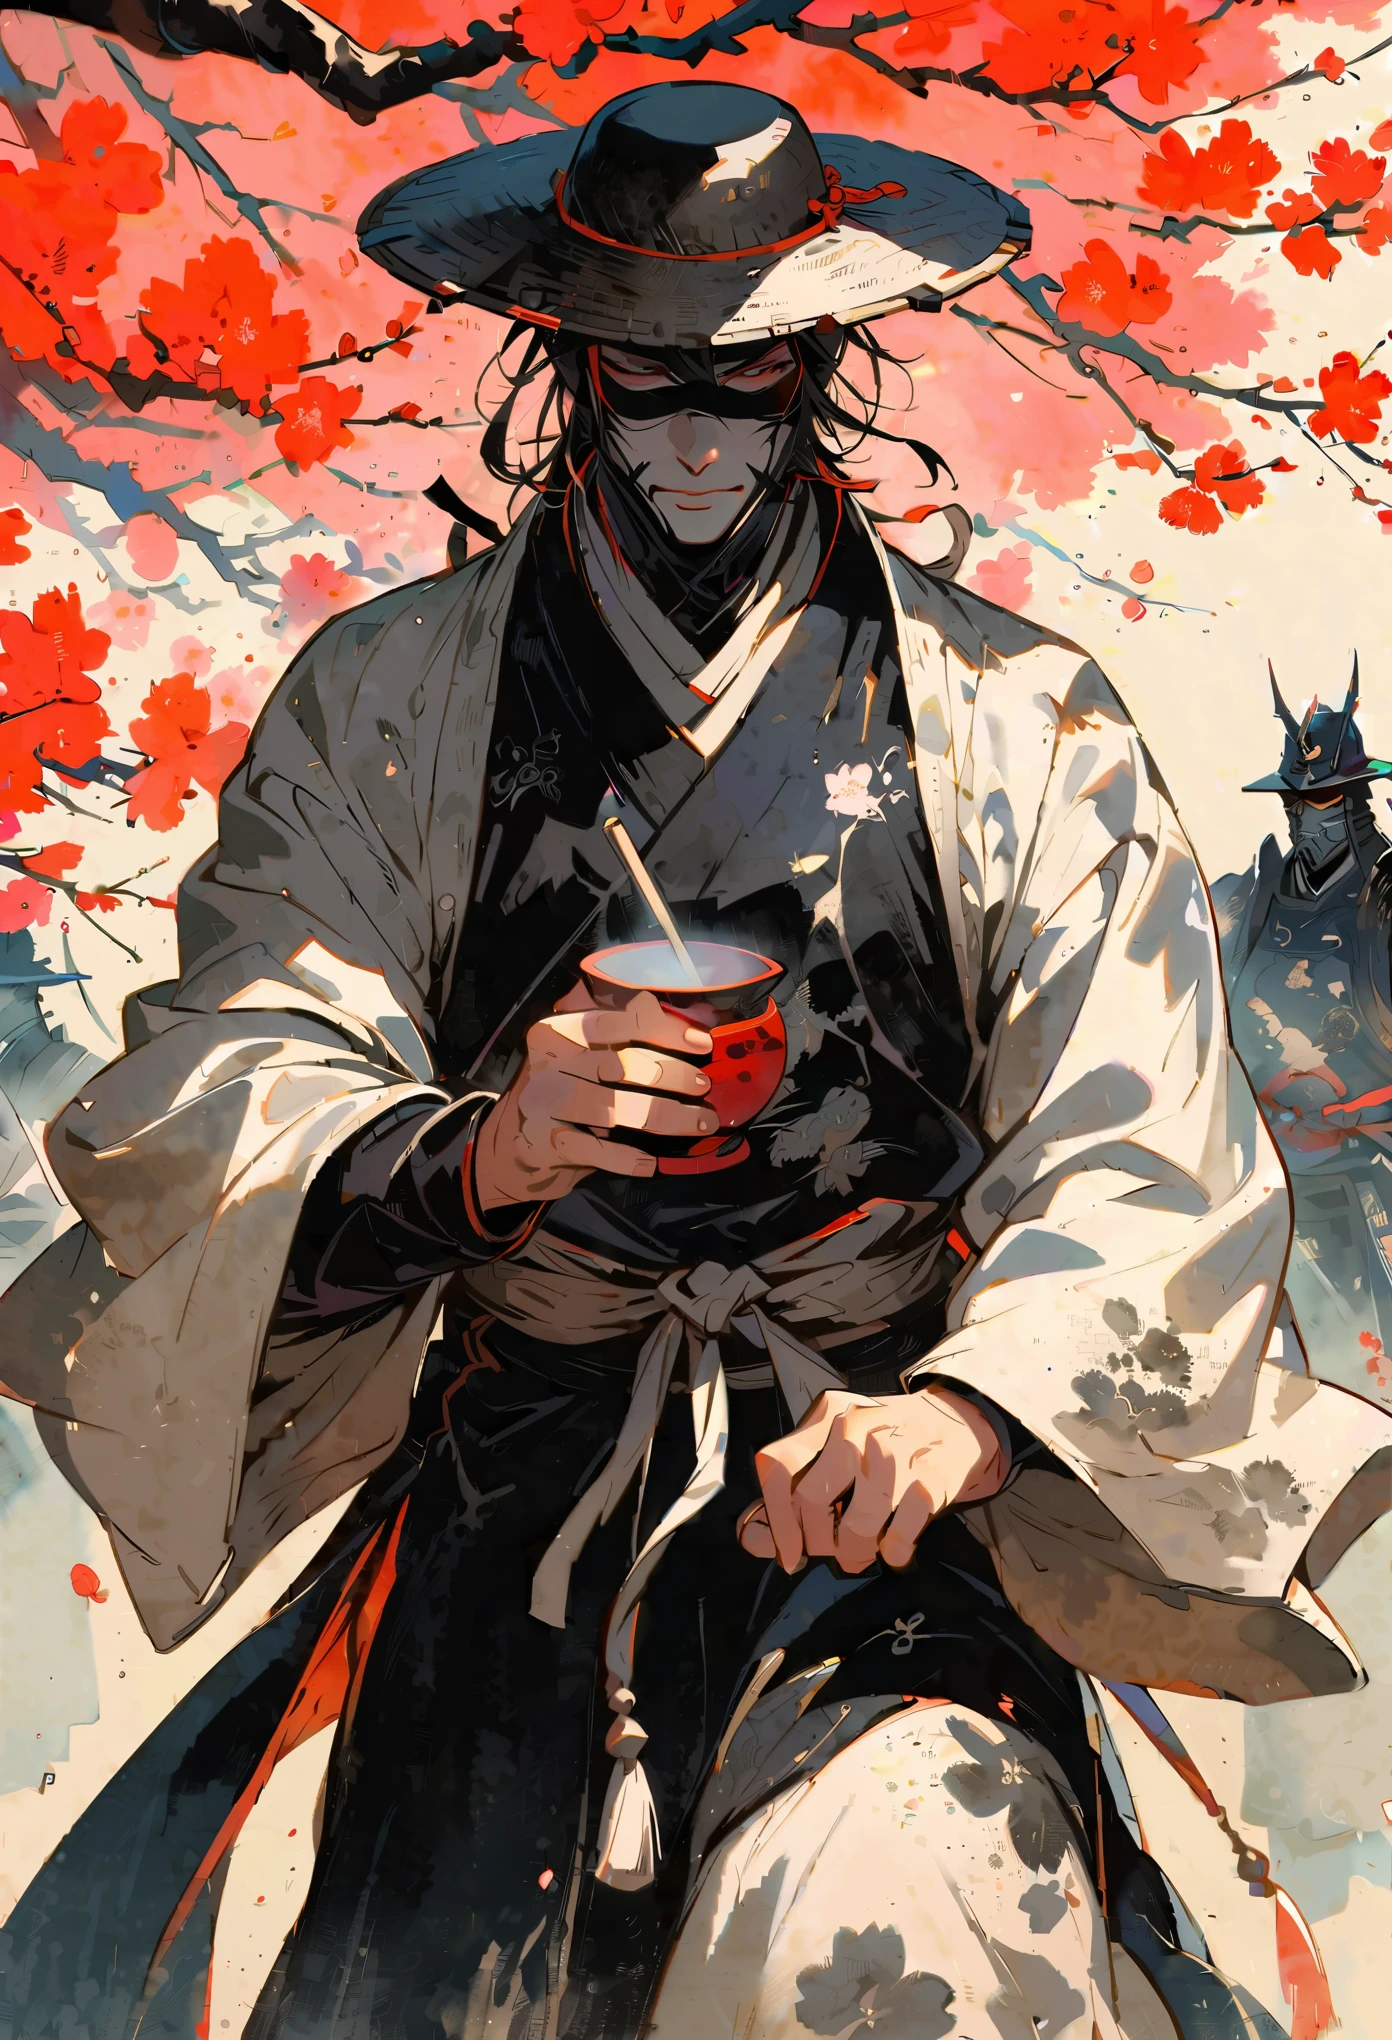 samurai blindado, vestindo chapéus de palha, estão imersos em uma cerimônia do chá sob uma cerejeira, vividamente trazido à vida em uma pintura a tinta austera. O espectro monocromático destaca com maestria as flores efêmeras e a solenidade do ritual, enfatizando a aura serena, mas imponente, dos guerreiros